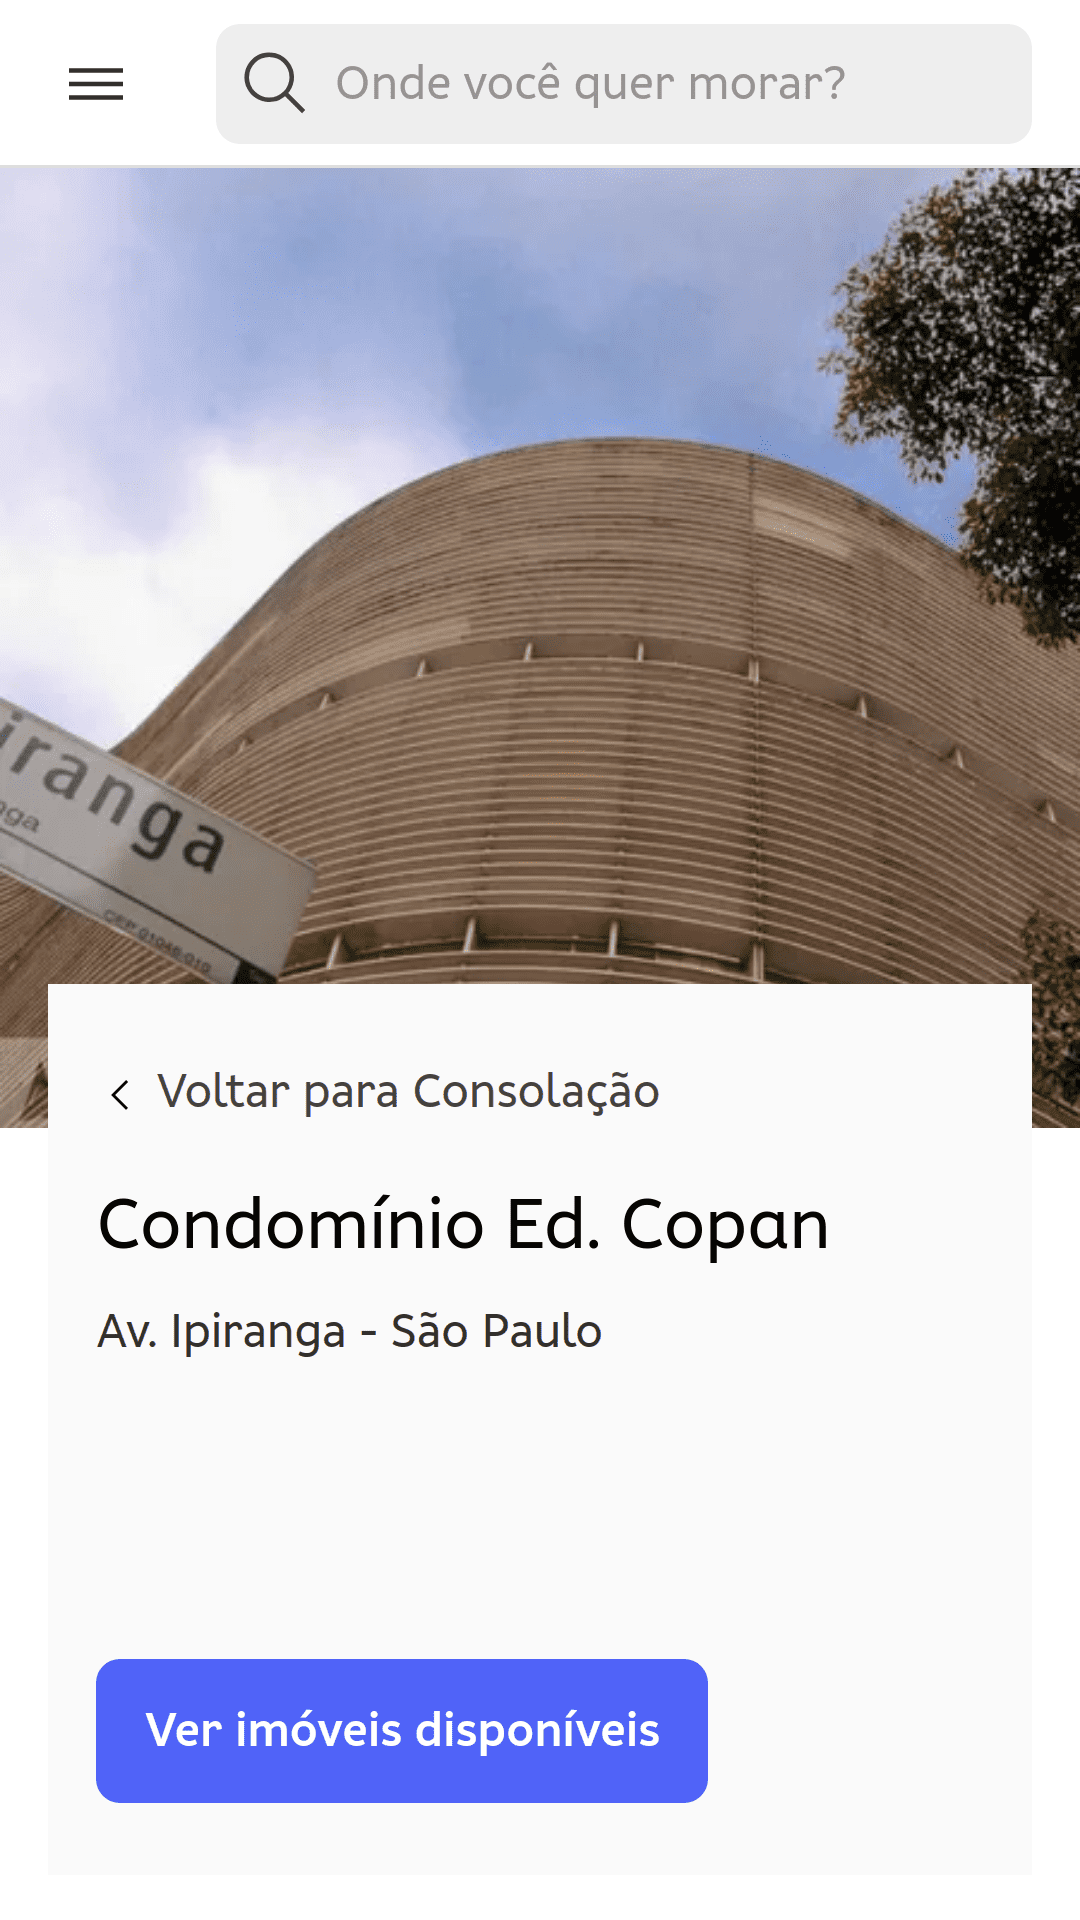 หน้าคอนโดมิเนียมสำหรับ Edifício Copan (เซาเปาโล บราซิล) ภาพถ่ายจากระดับพื้นดินแสดงส่วนโค้งของโครงสร้างอาคาร